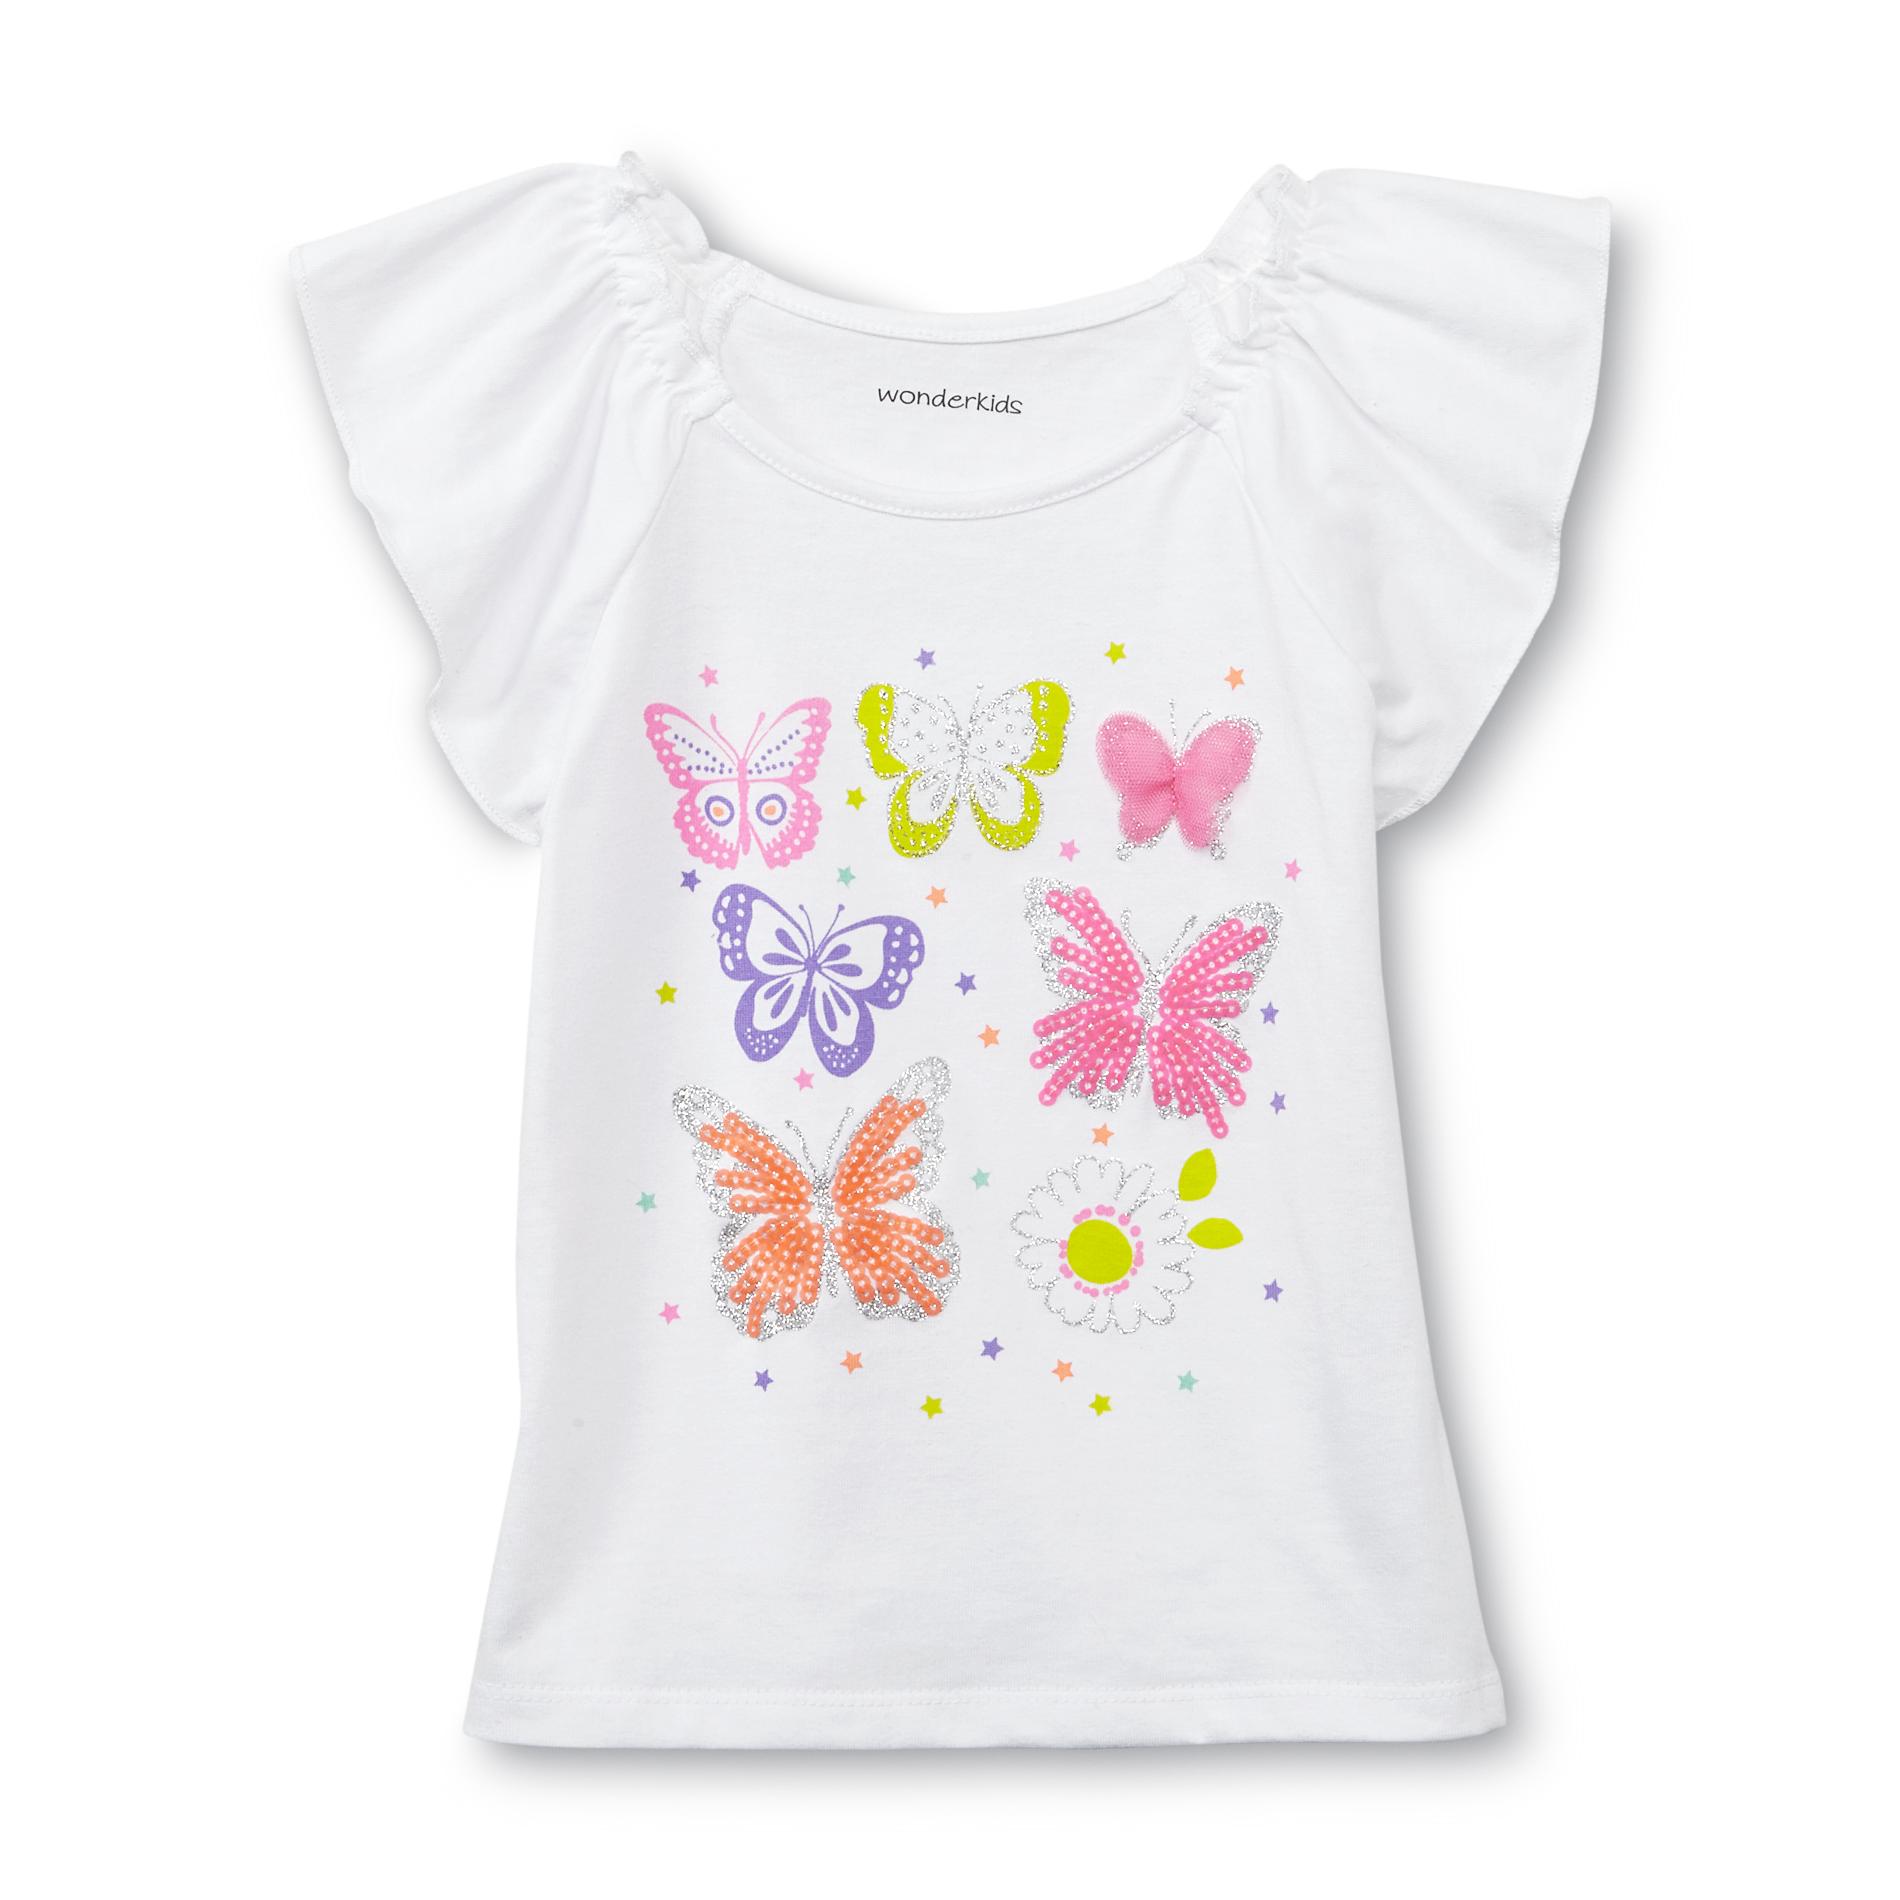 WonderKids Toddler Girl's Embellished Top - Neon Butterflies